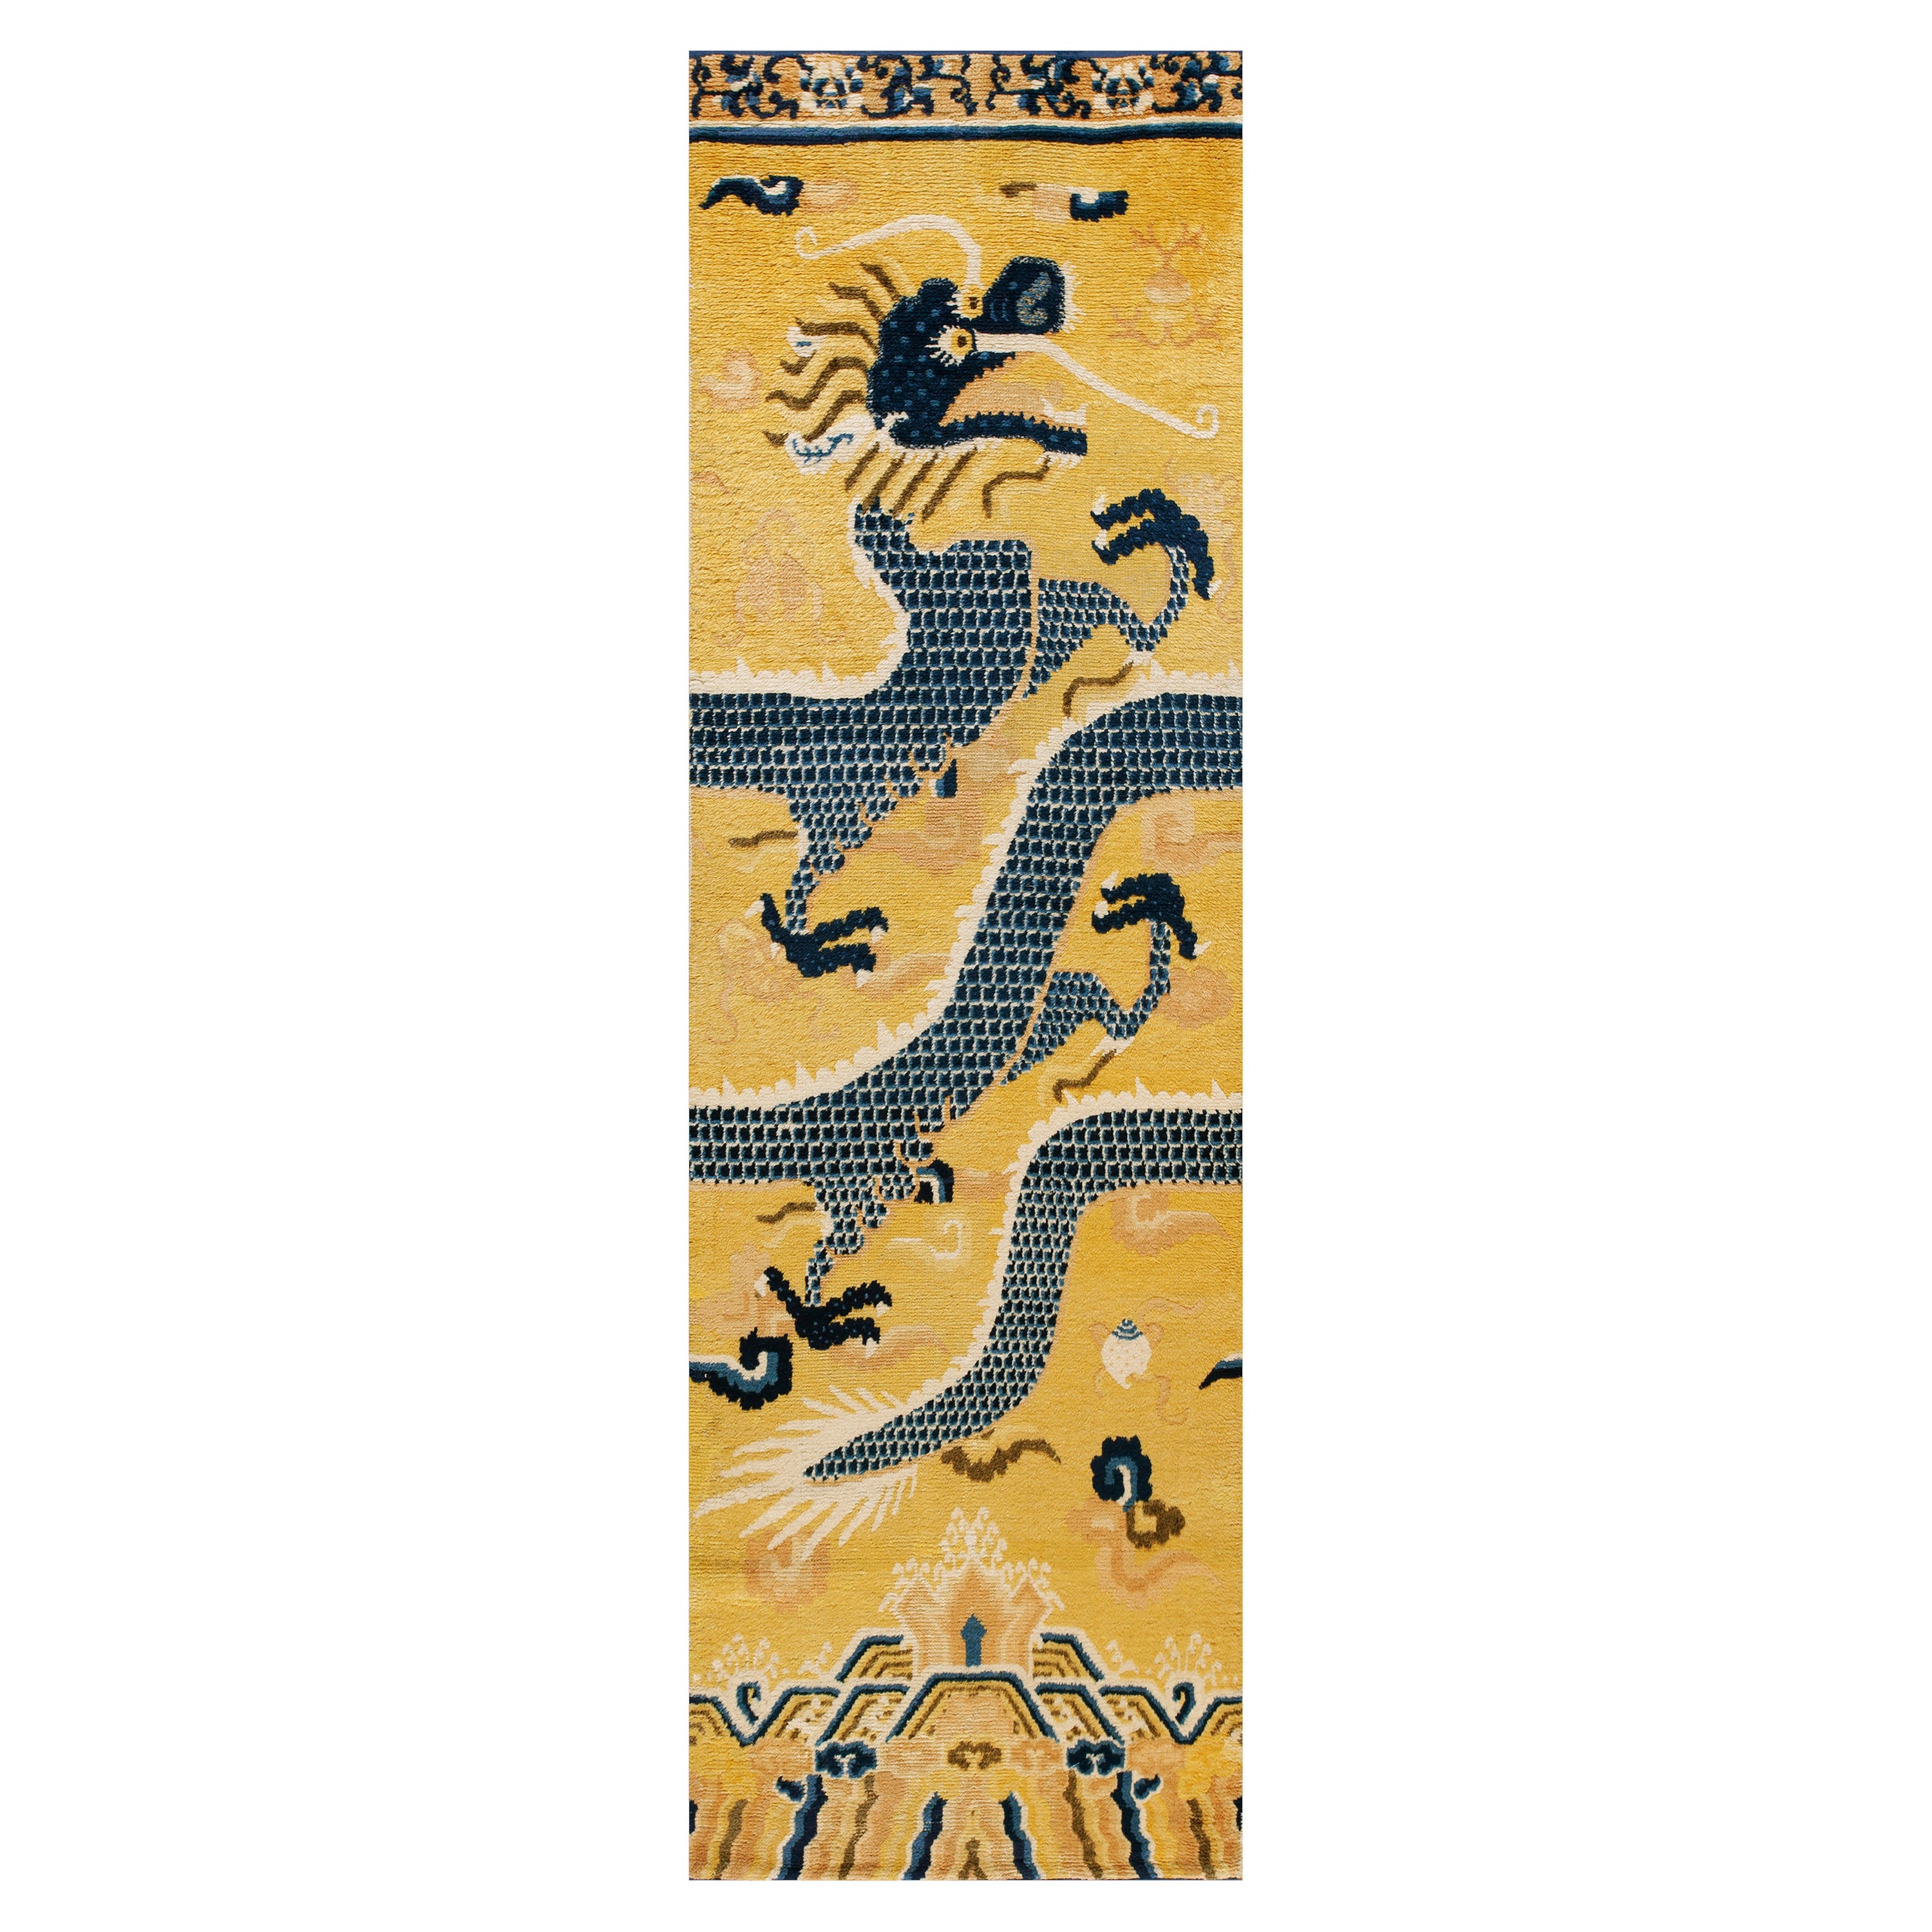 Chinesischer Ningxia Drachen-Säulenteppich aus dem späten 18. Jahrhundert (2' 9'' x 9'85 x 275 cm)